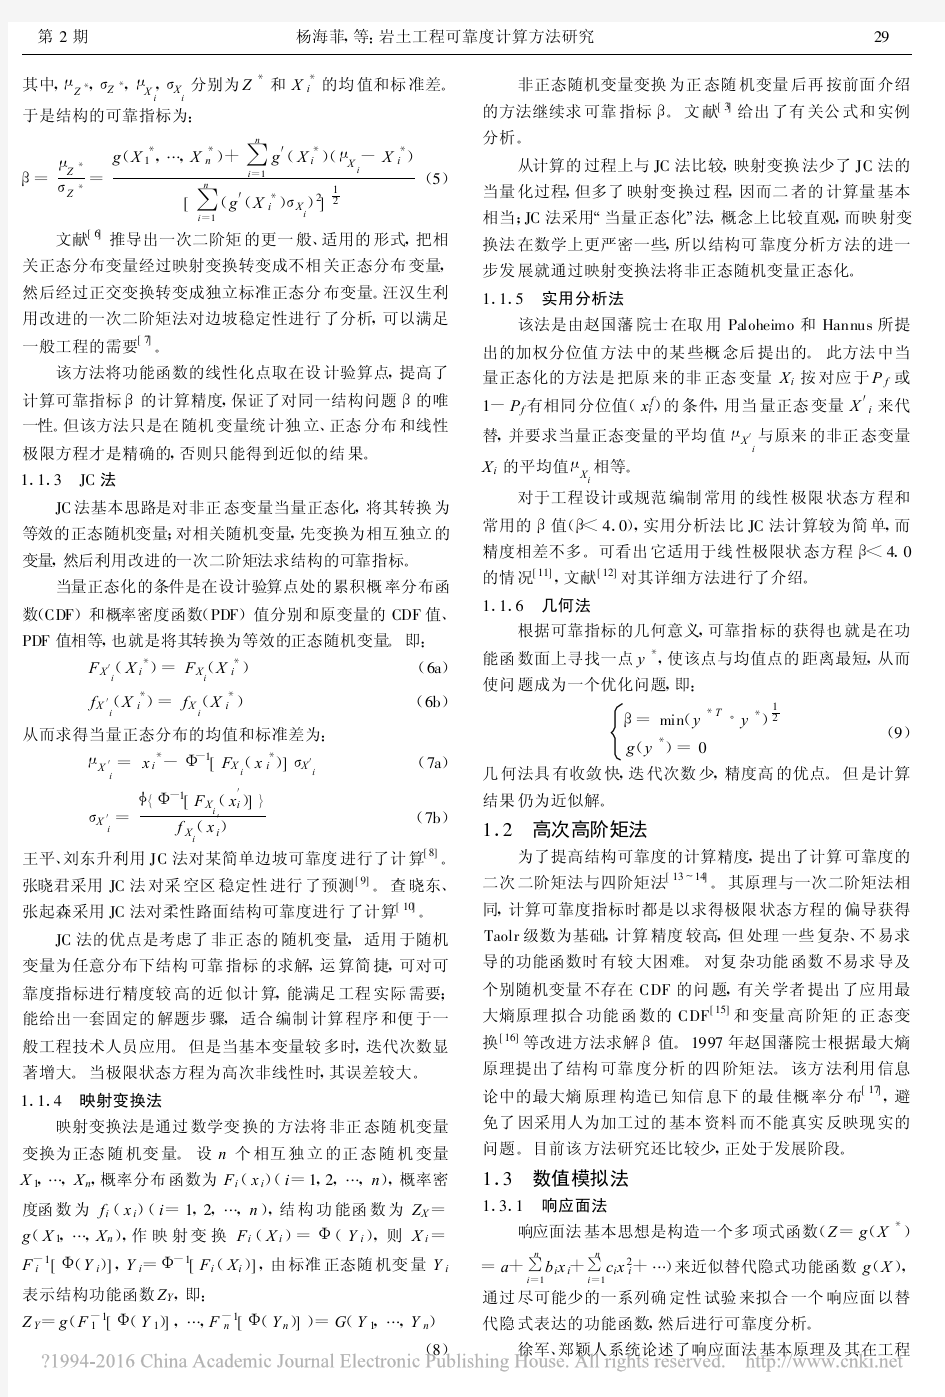 岩土工程可靠度计算方法研究_杨海菲